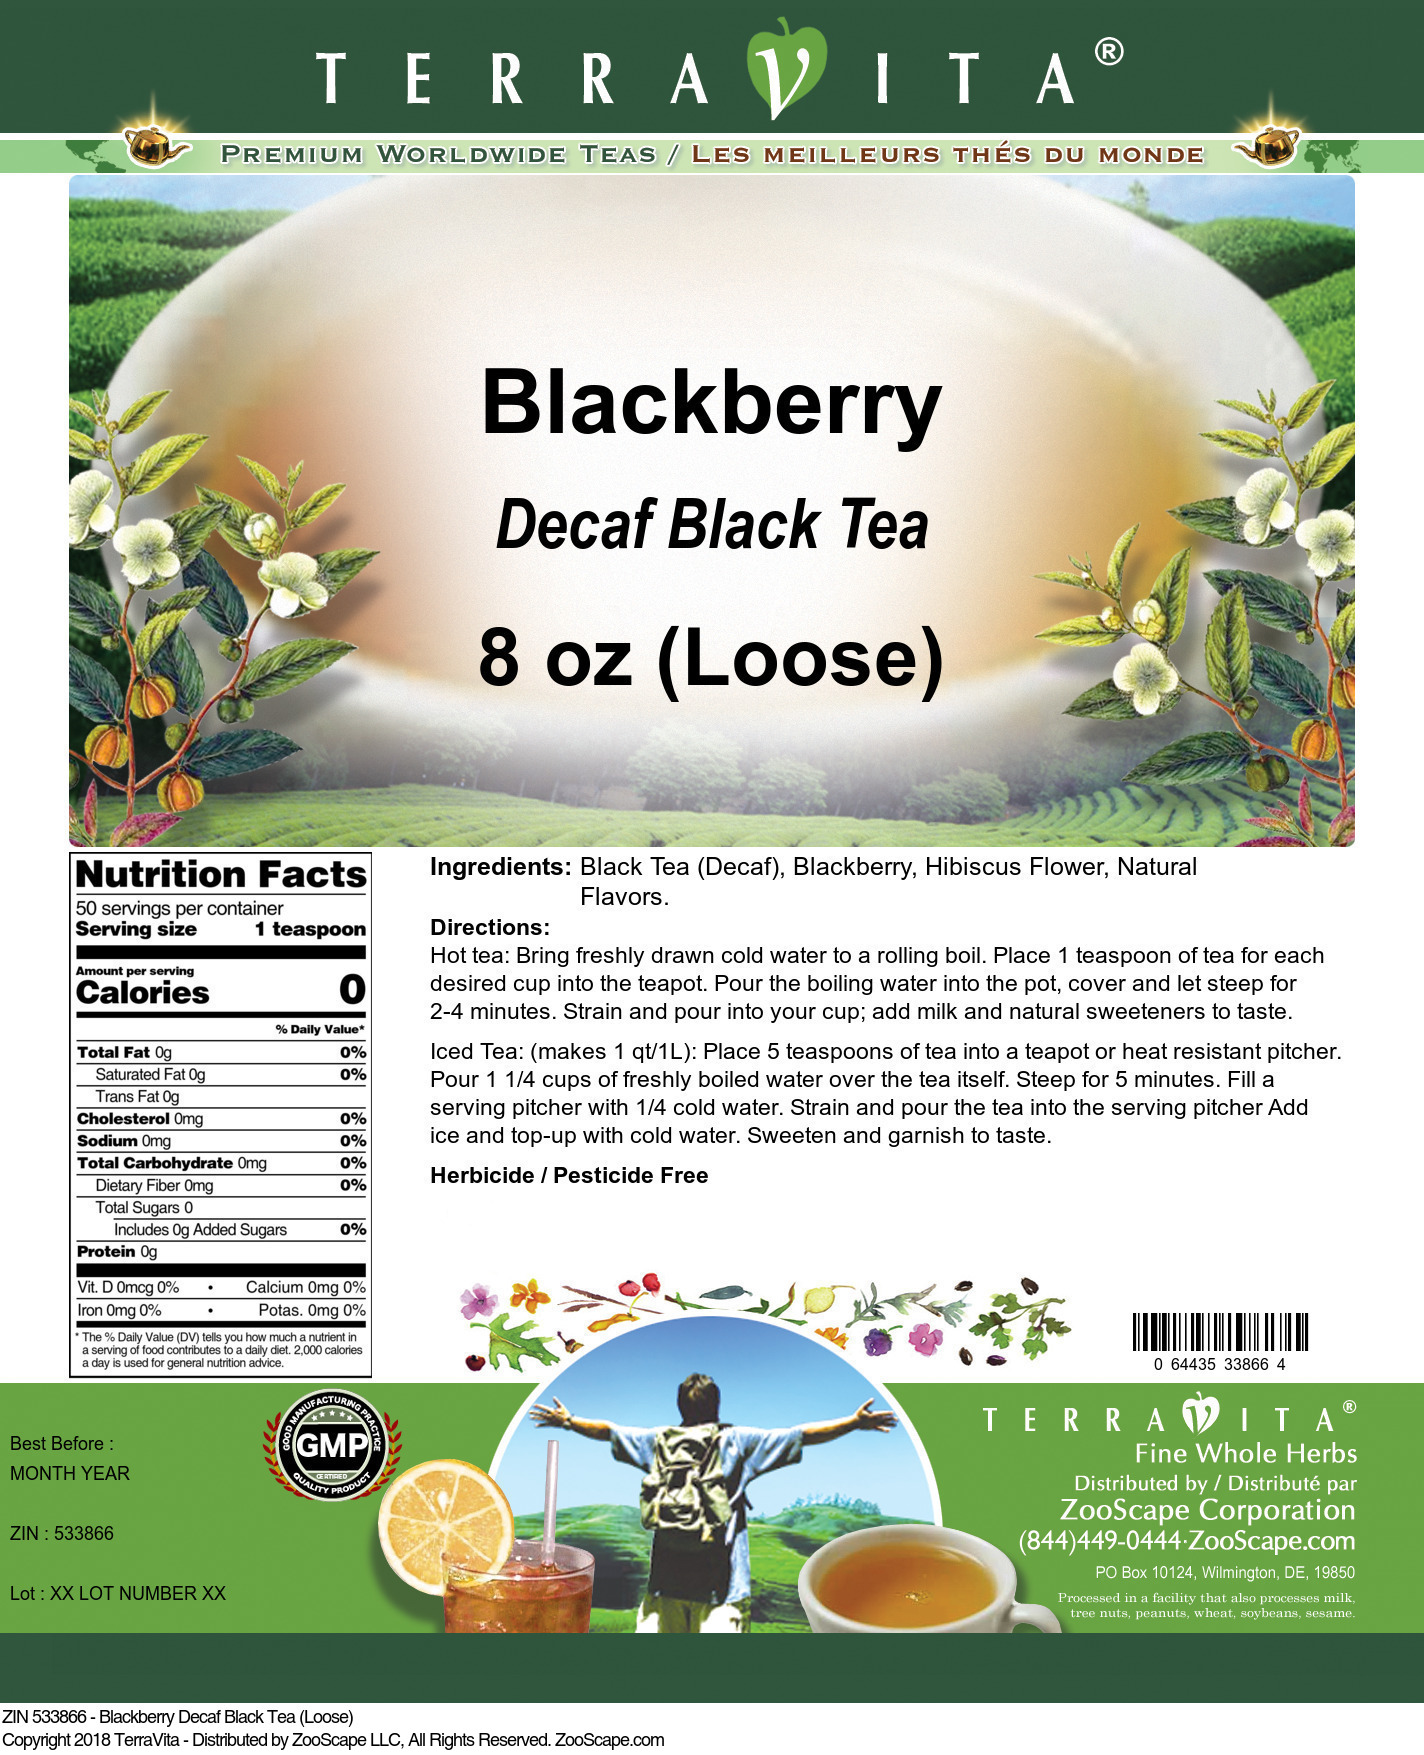 Blackberry Decaf Black Tea (Loose) - Label